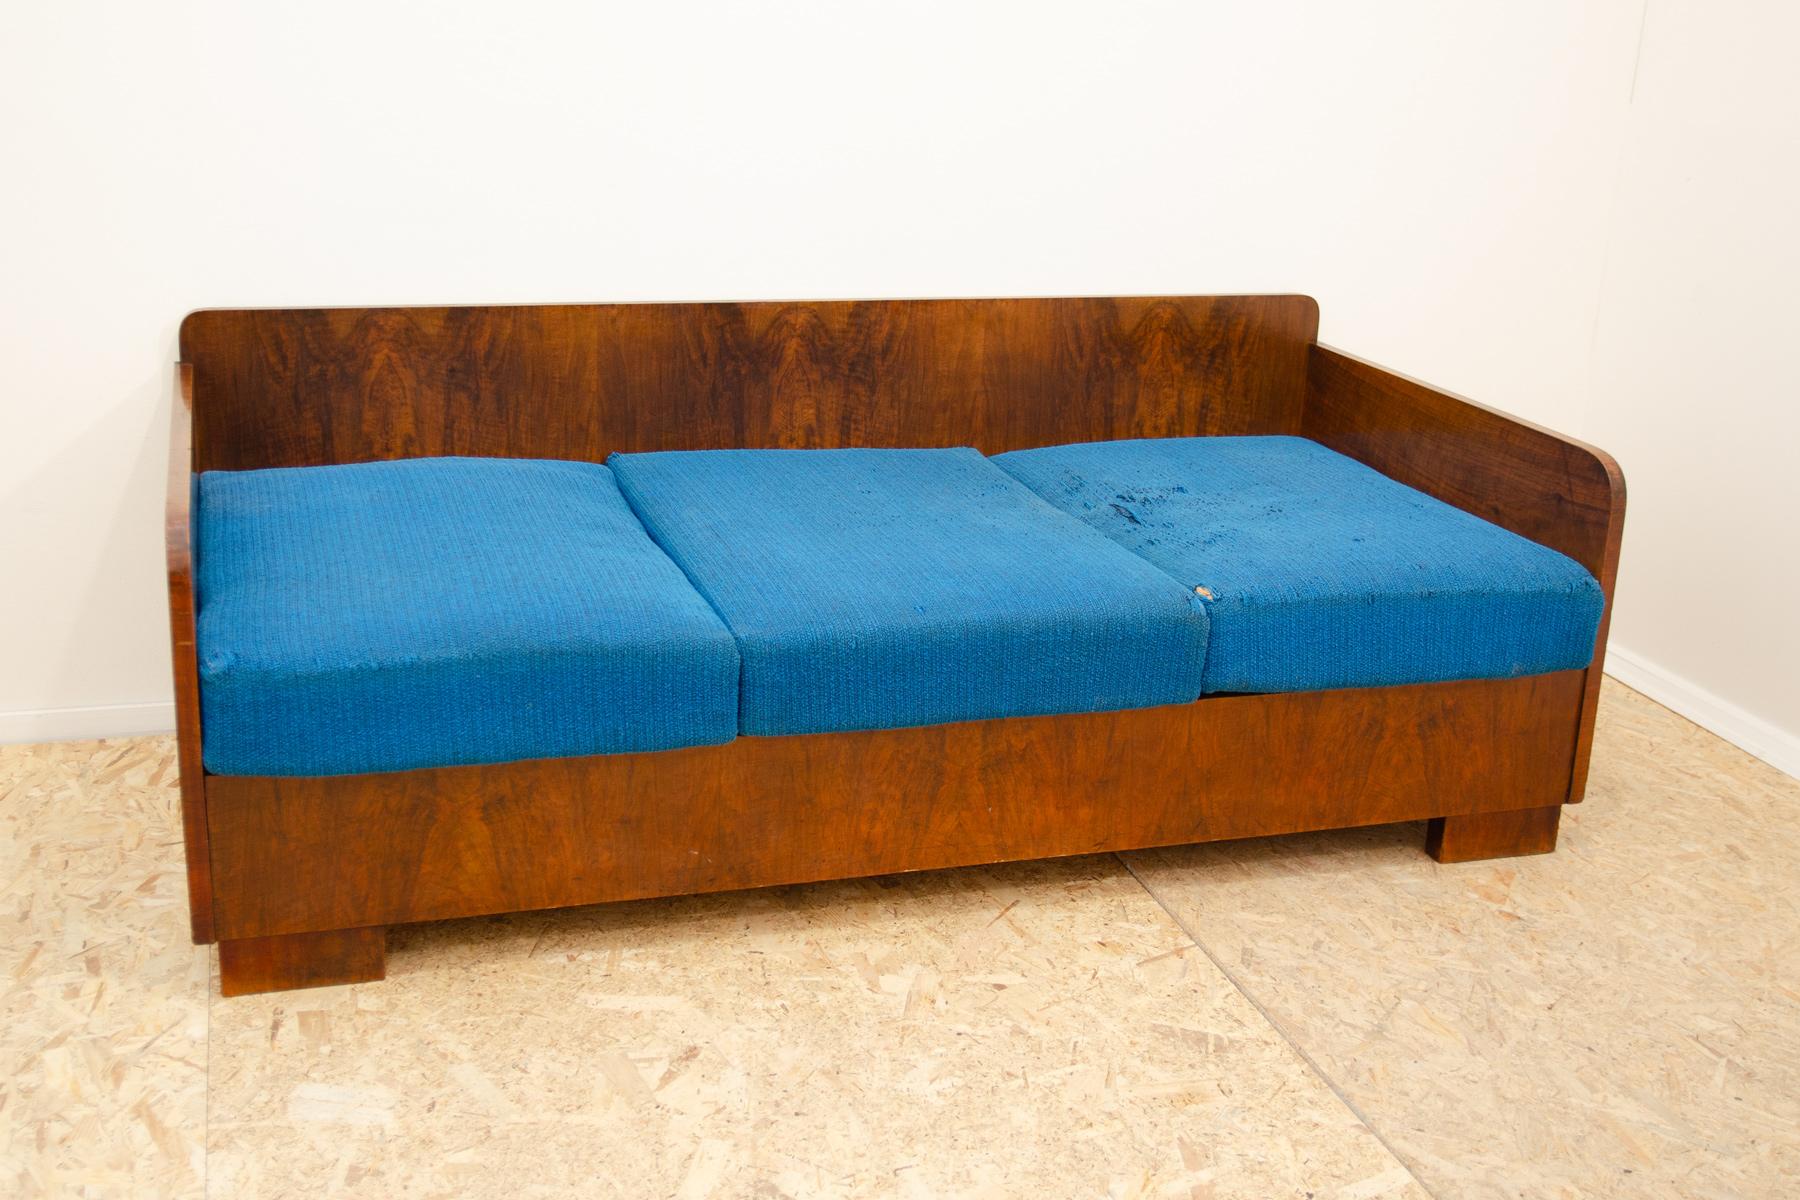 Ce canapé de style ART DECO avec un espace de rangement a été conçu et fabriqué dans les années 1930 dans l'ancienne Tchécoslovaquie.
Ce design simple s'inscrit dans le contexte de la création de design en Tchécoslovaquie entre les années 1930 et